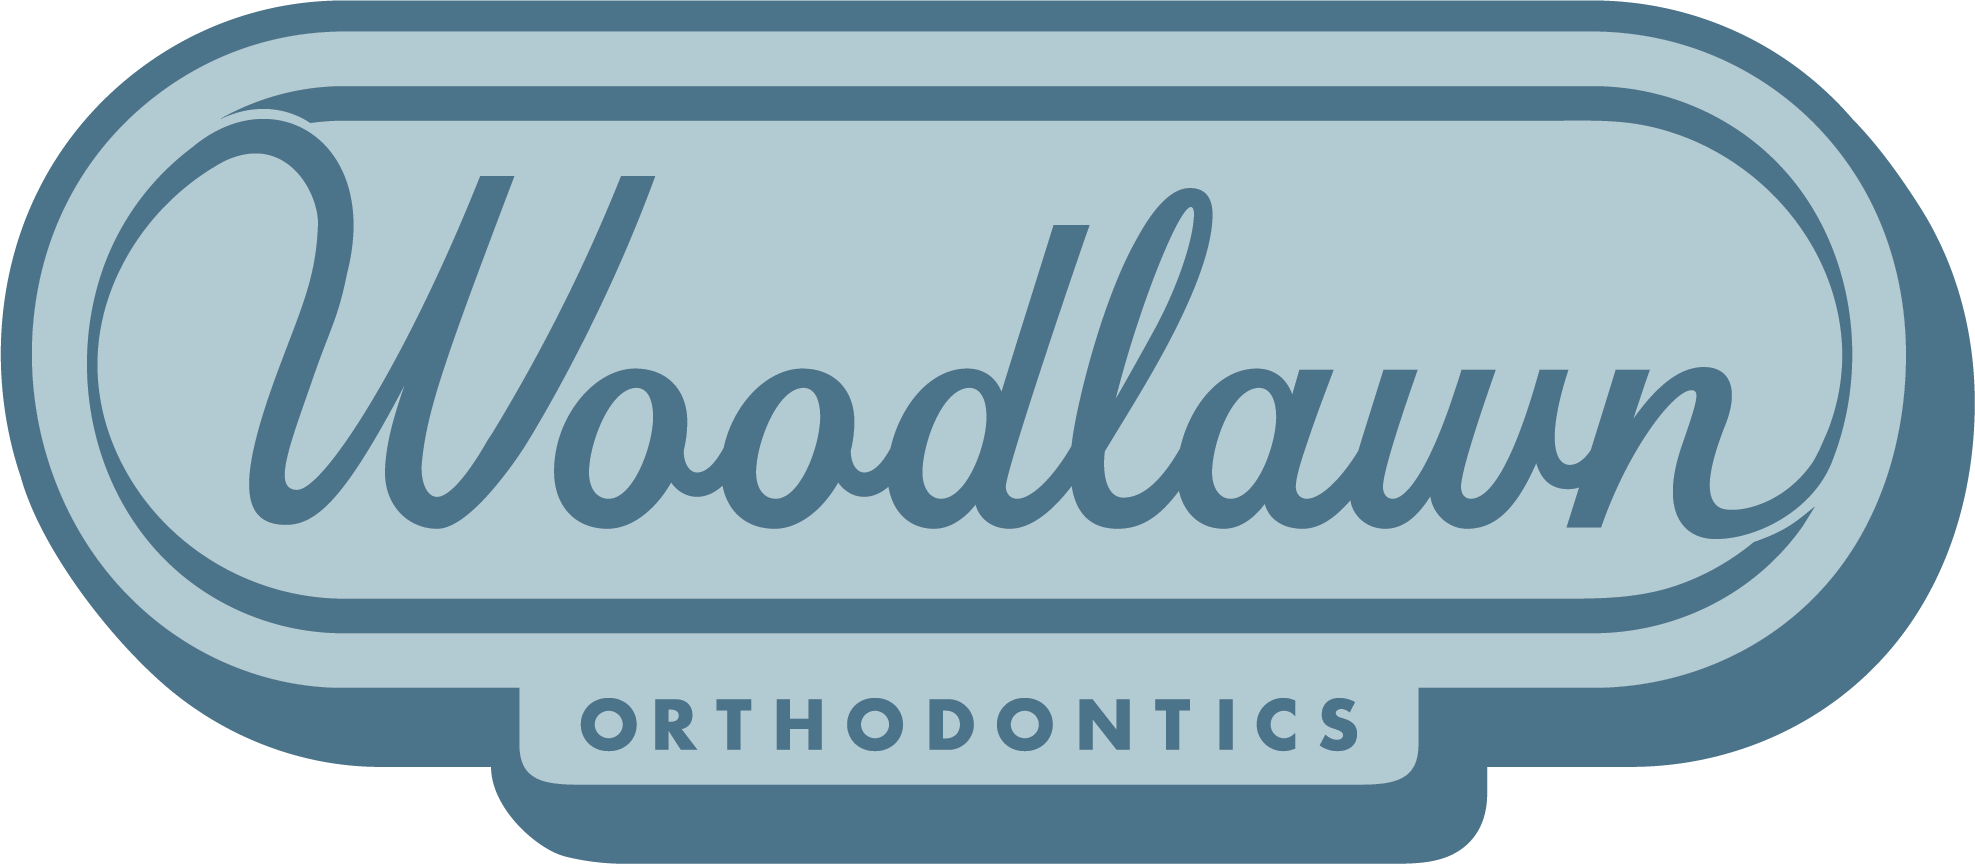 WoodlawnOrtho-Horizontal-Logo-Large.png